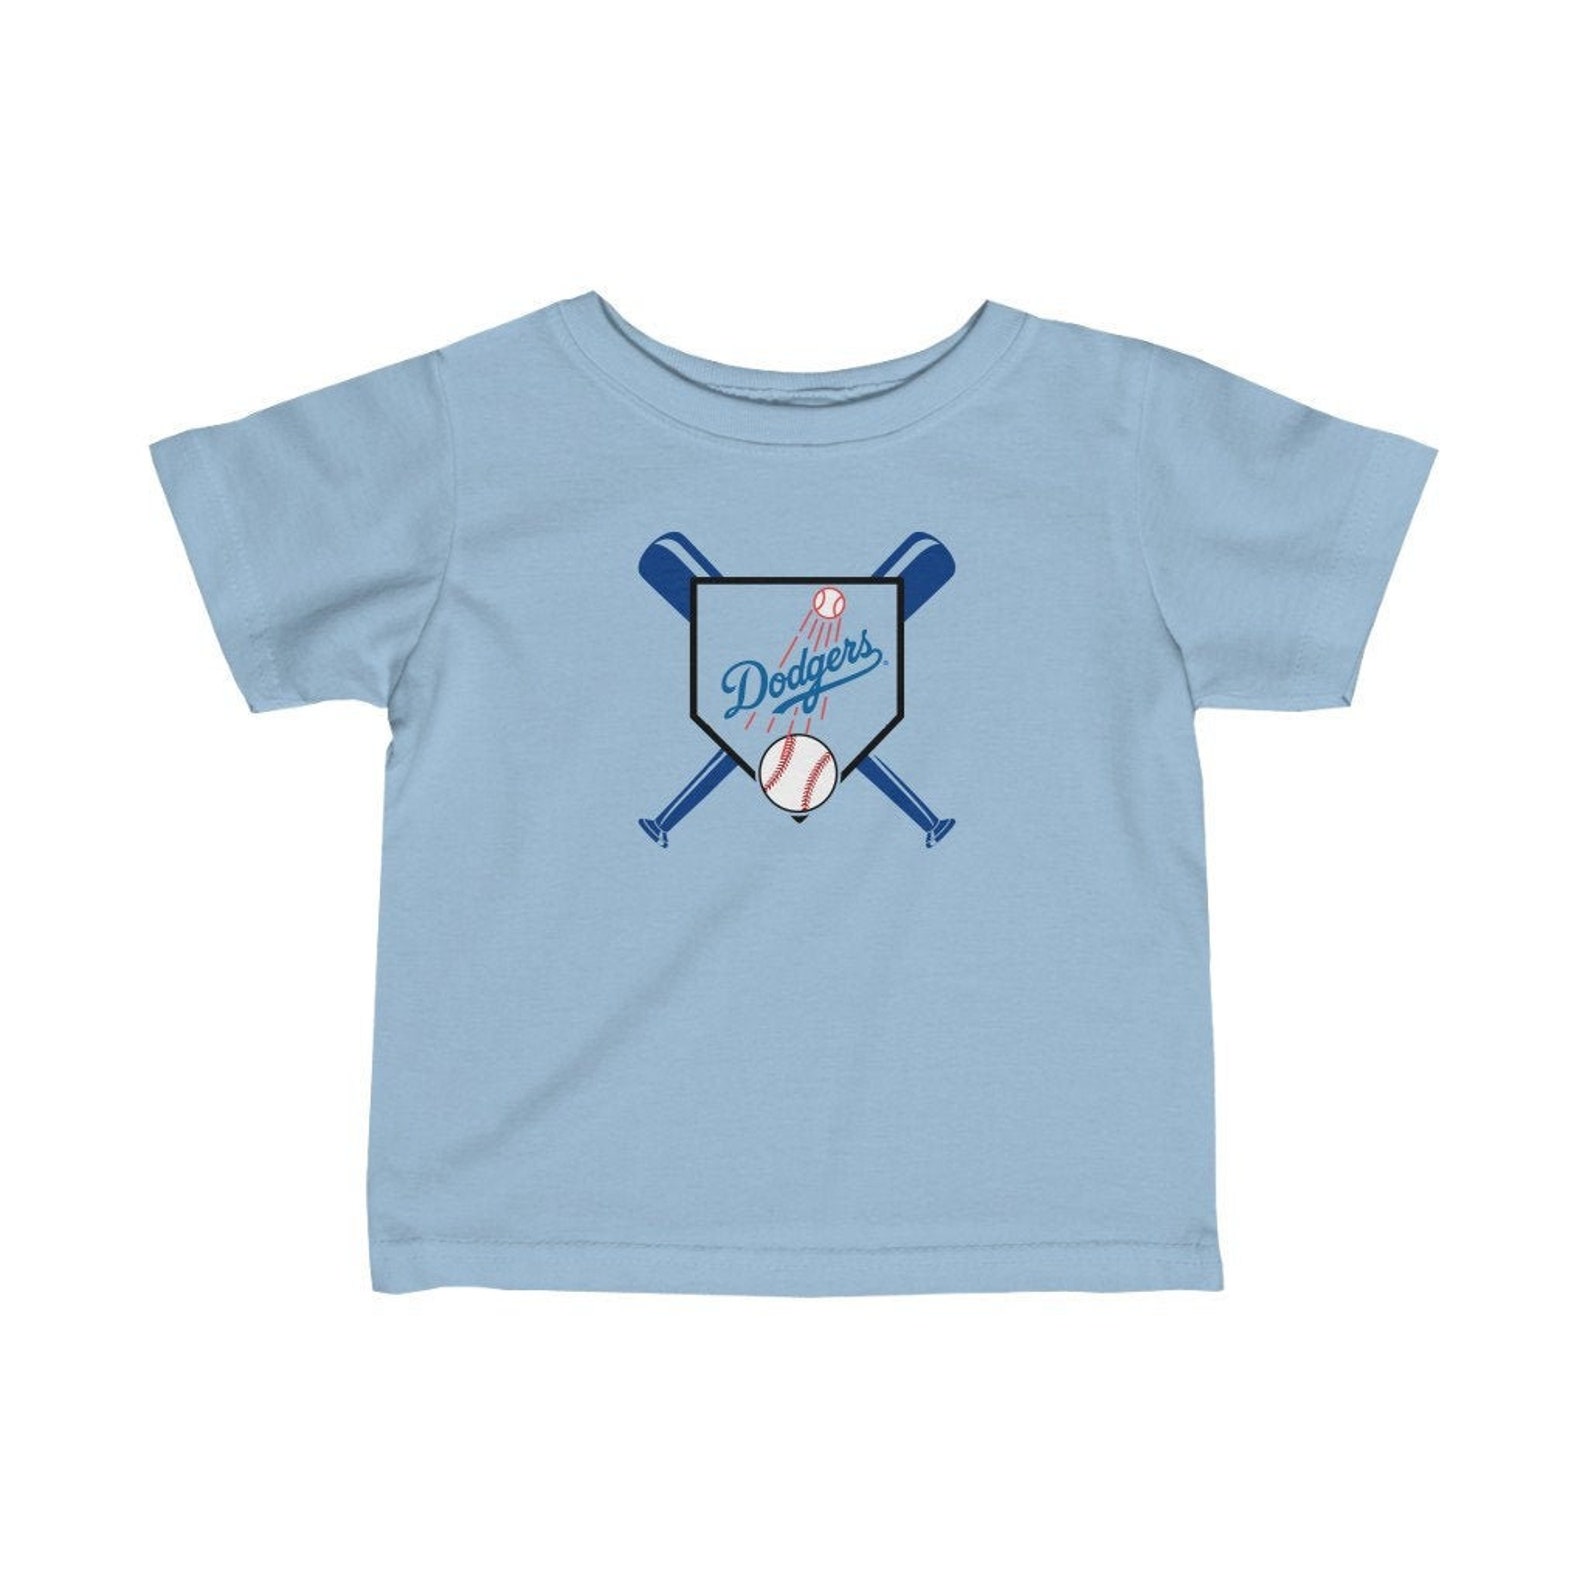 Dodgers Infant T Shirt / Dodgers Toddler T Shirt / Dodgers | Etsy